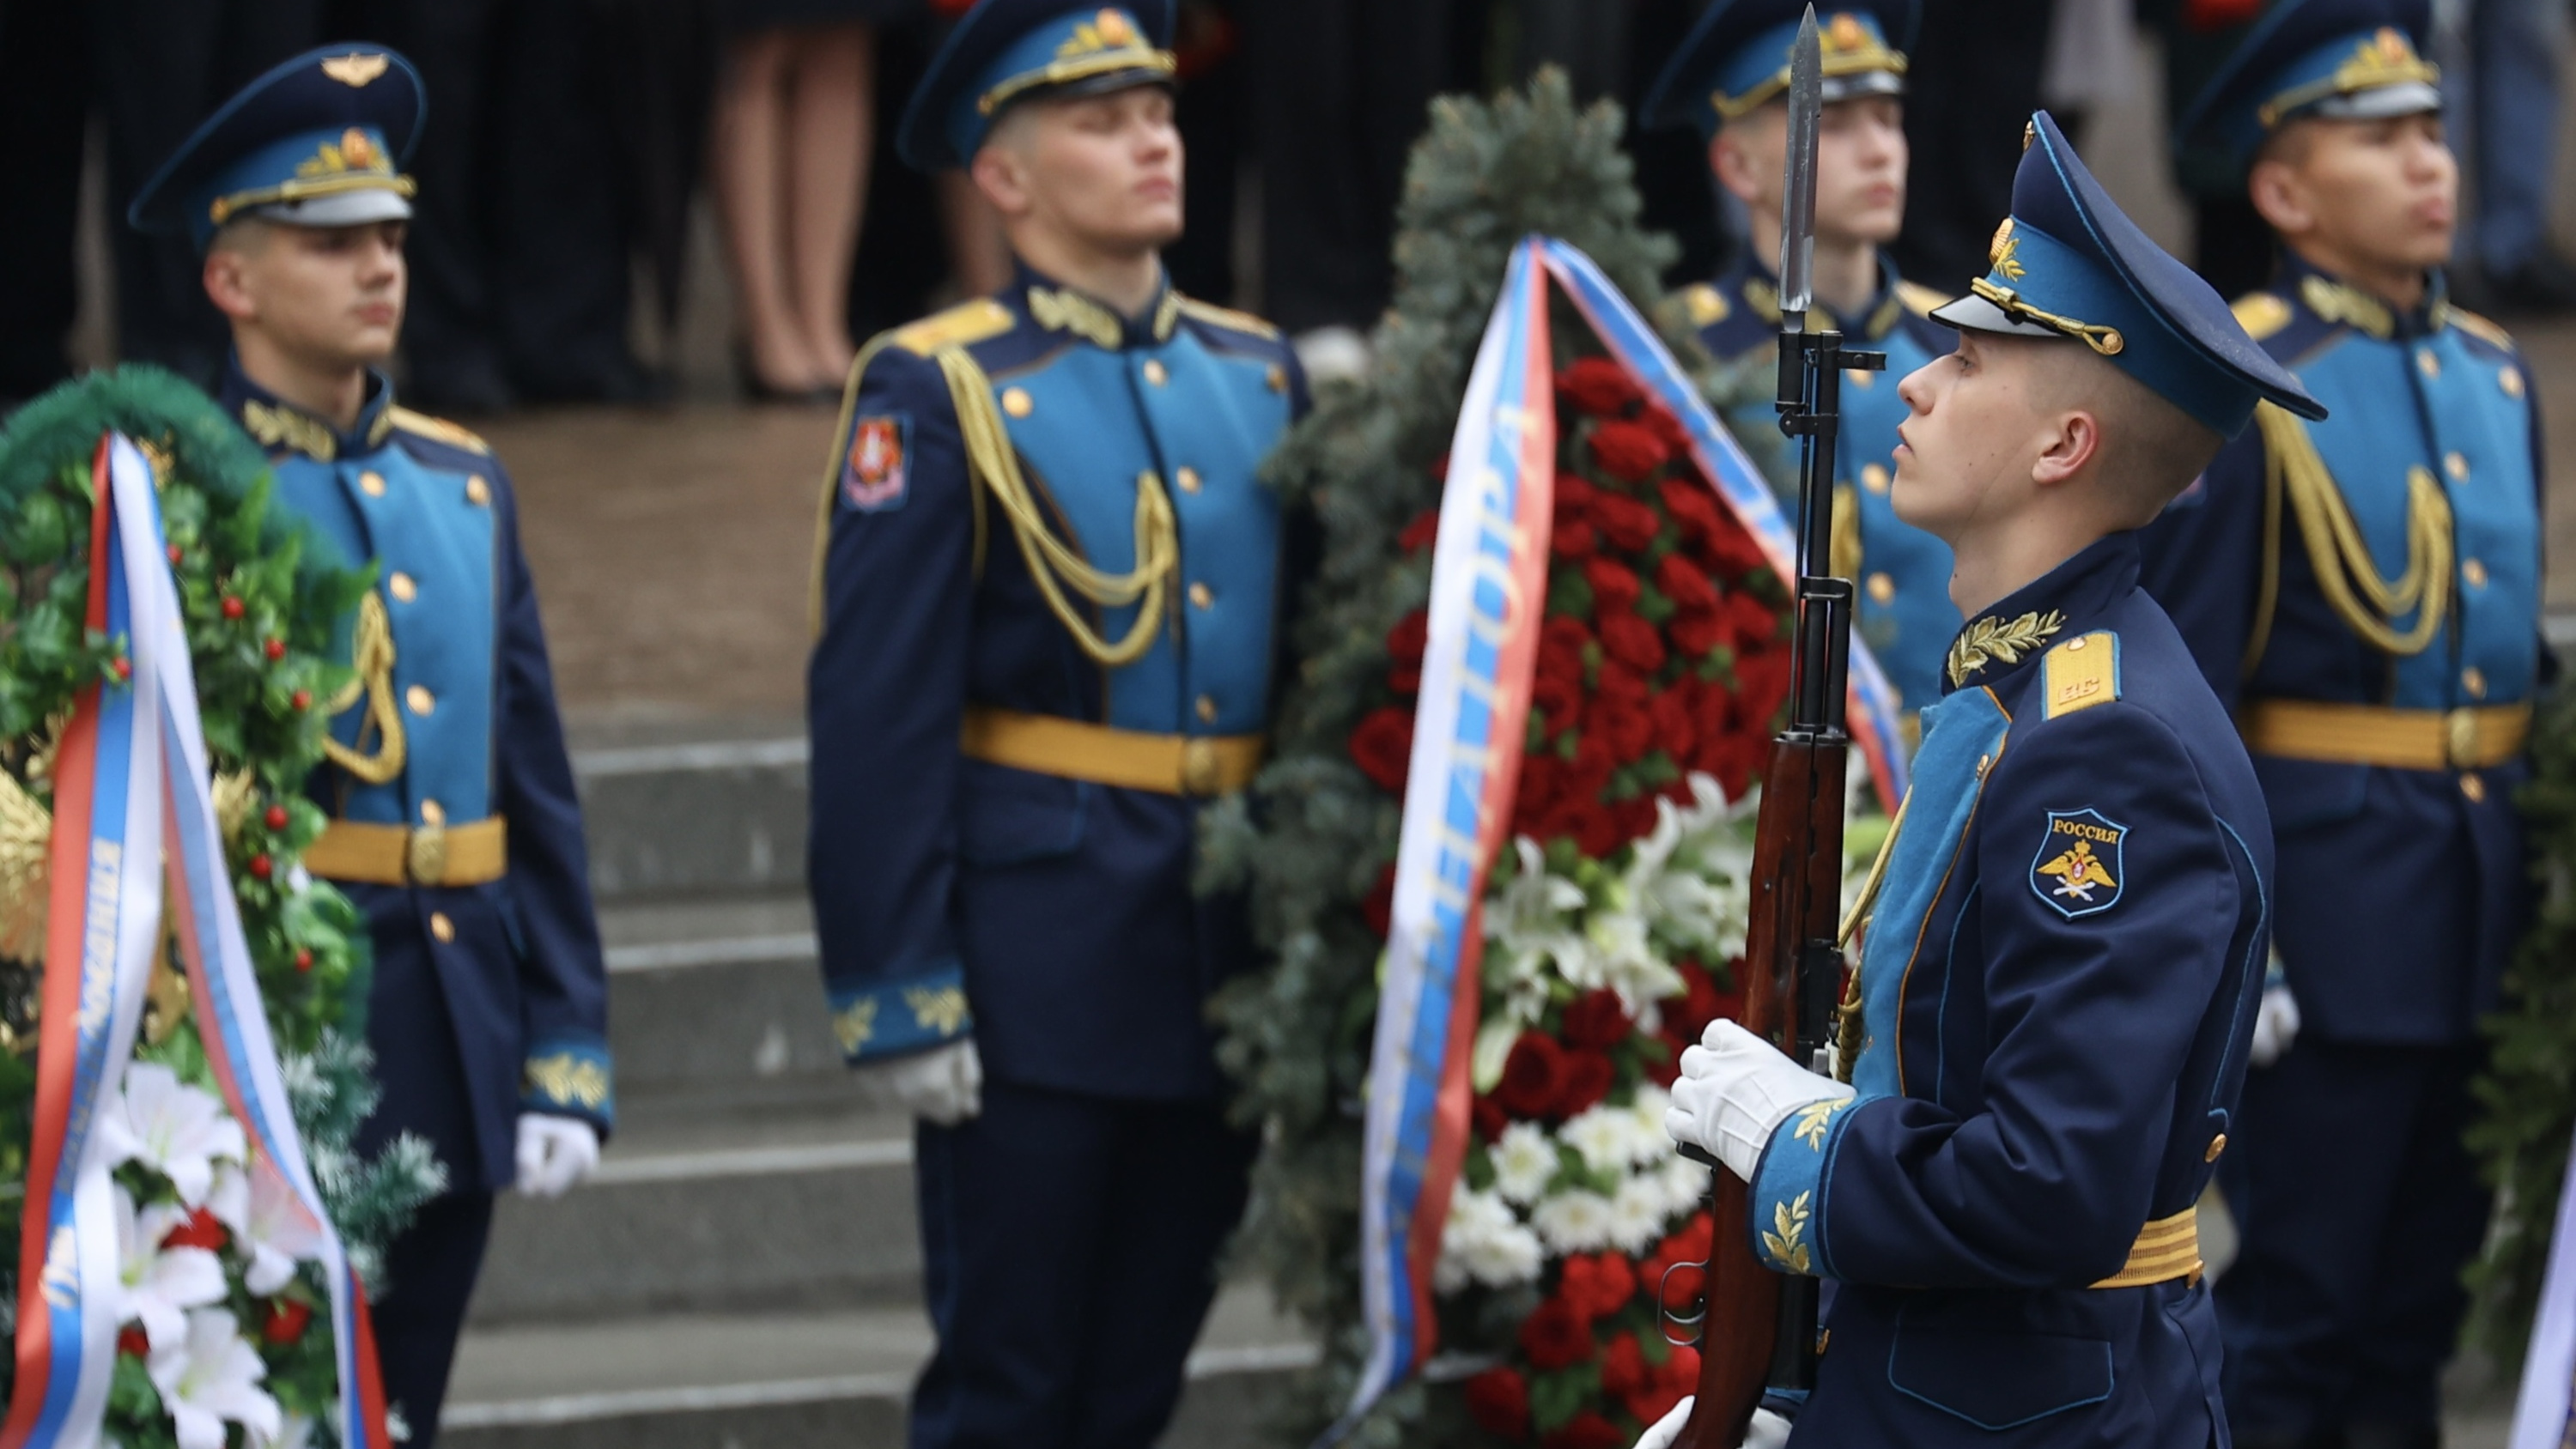 К площади Революции пригнали военную технику для парада Победы: онлайн-репортаж